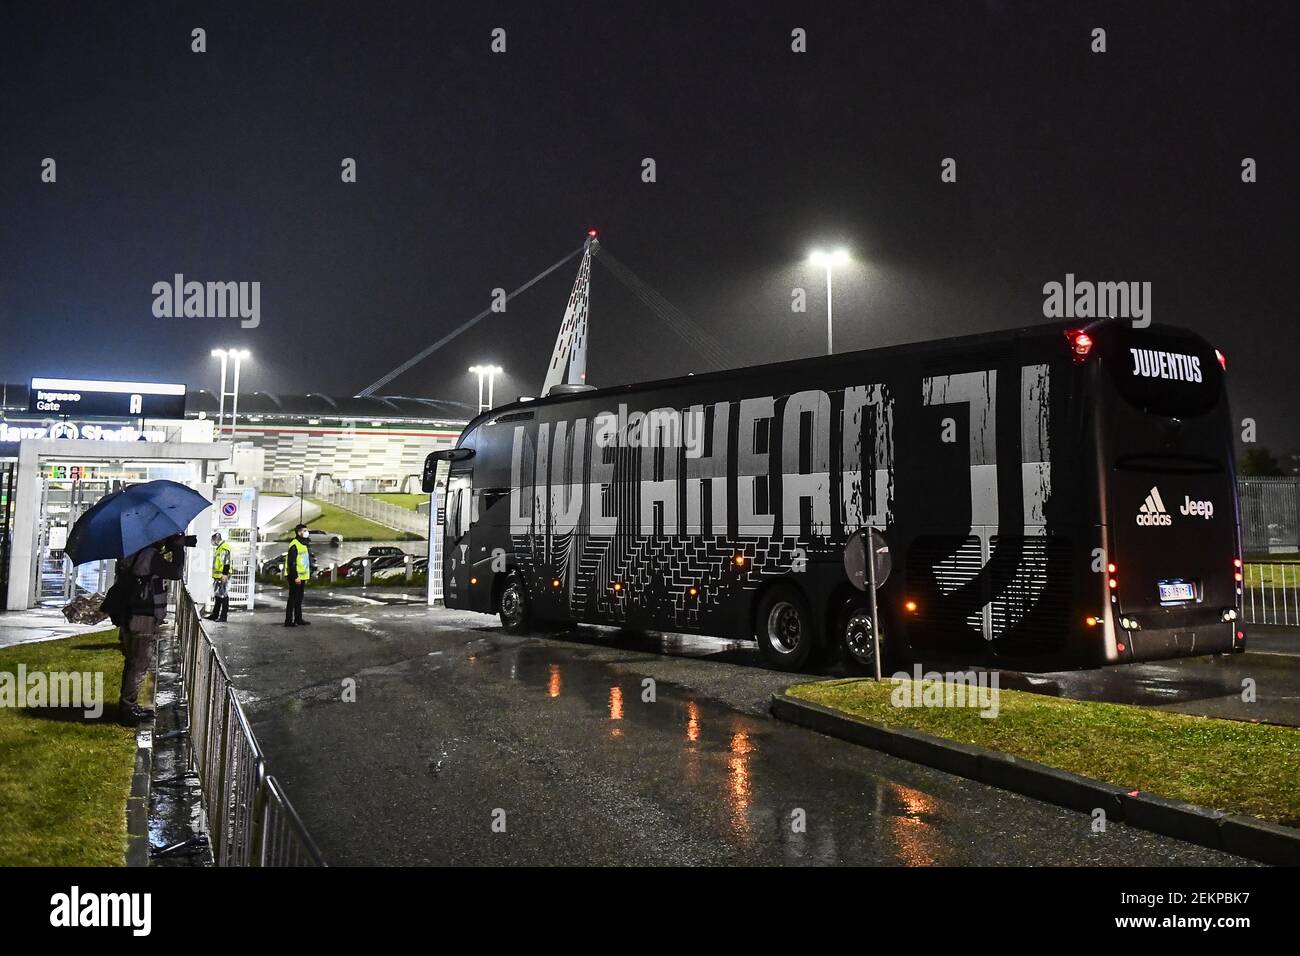 TURIN, ITALIE - 04 octobre 2020 : le bus transportant les joueurs de  Juventus arrive au stade Allianz à l'approche du match de football Serie A  entre le FC Juventus et la